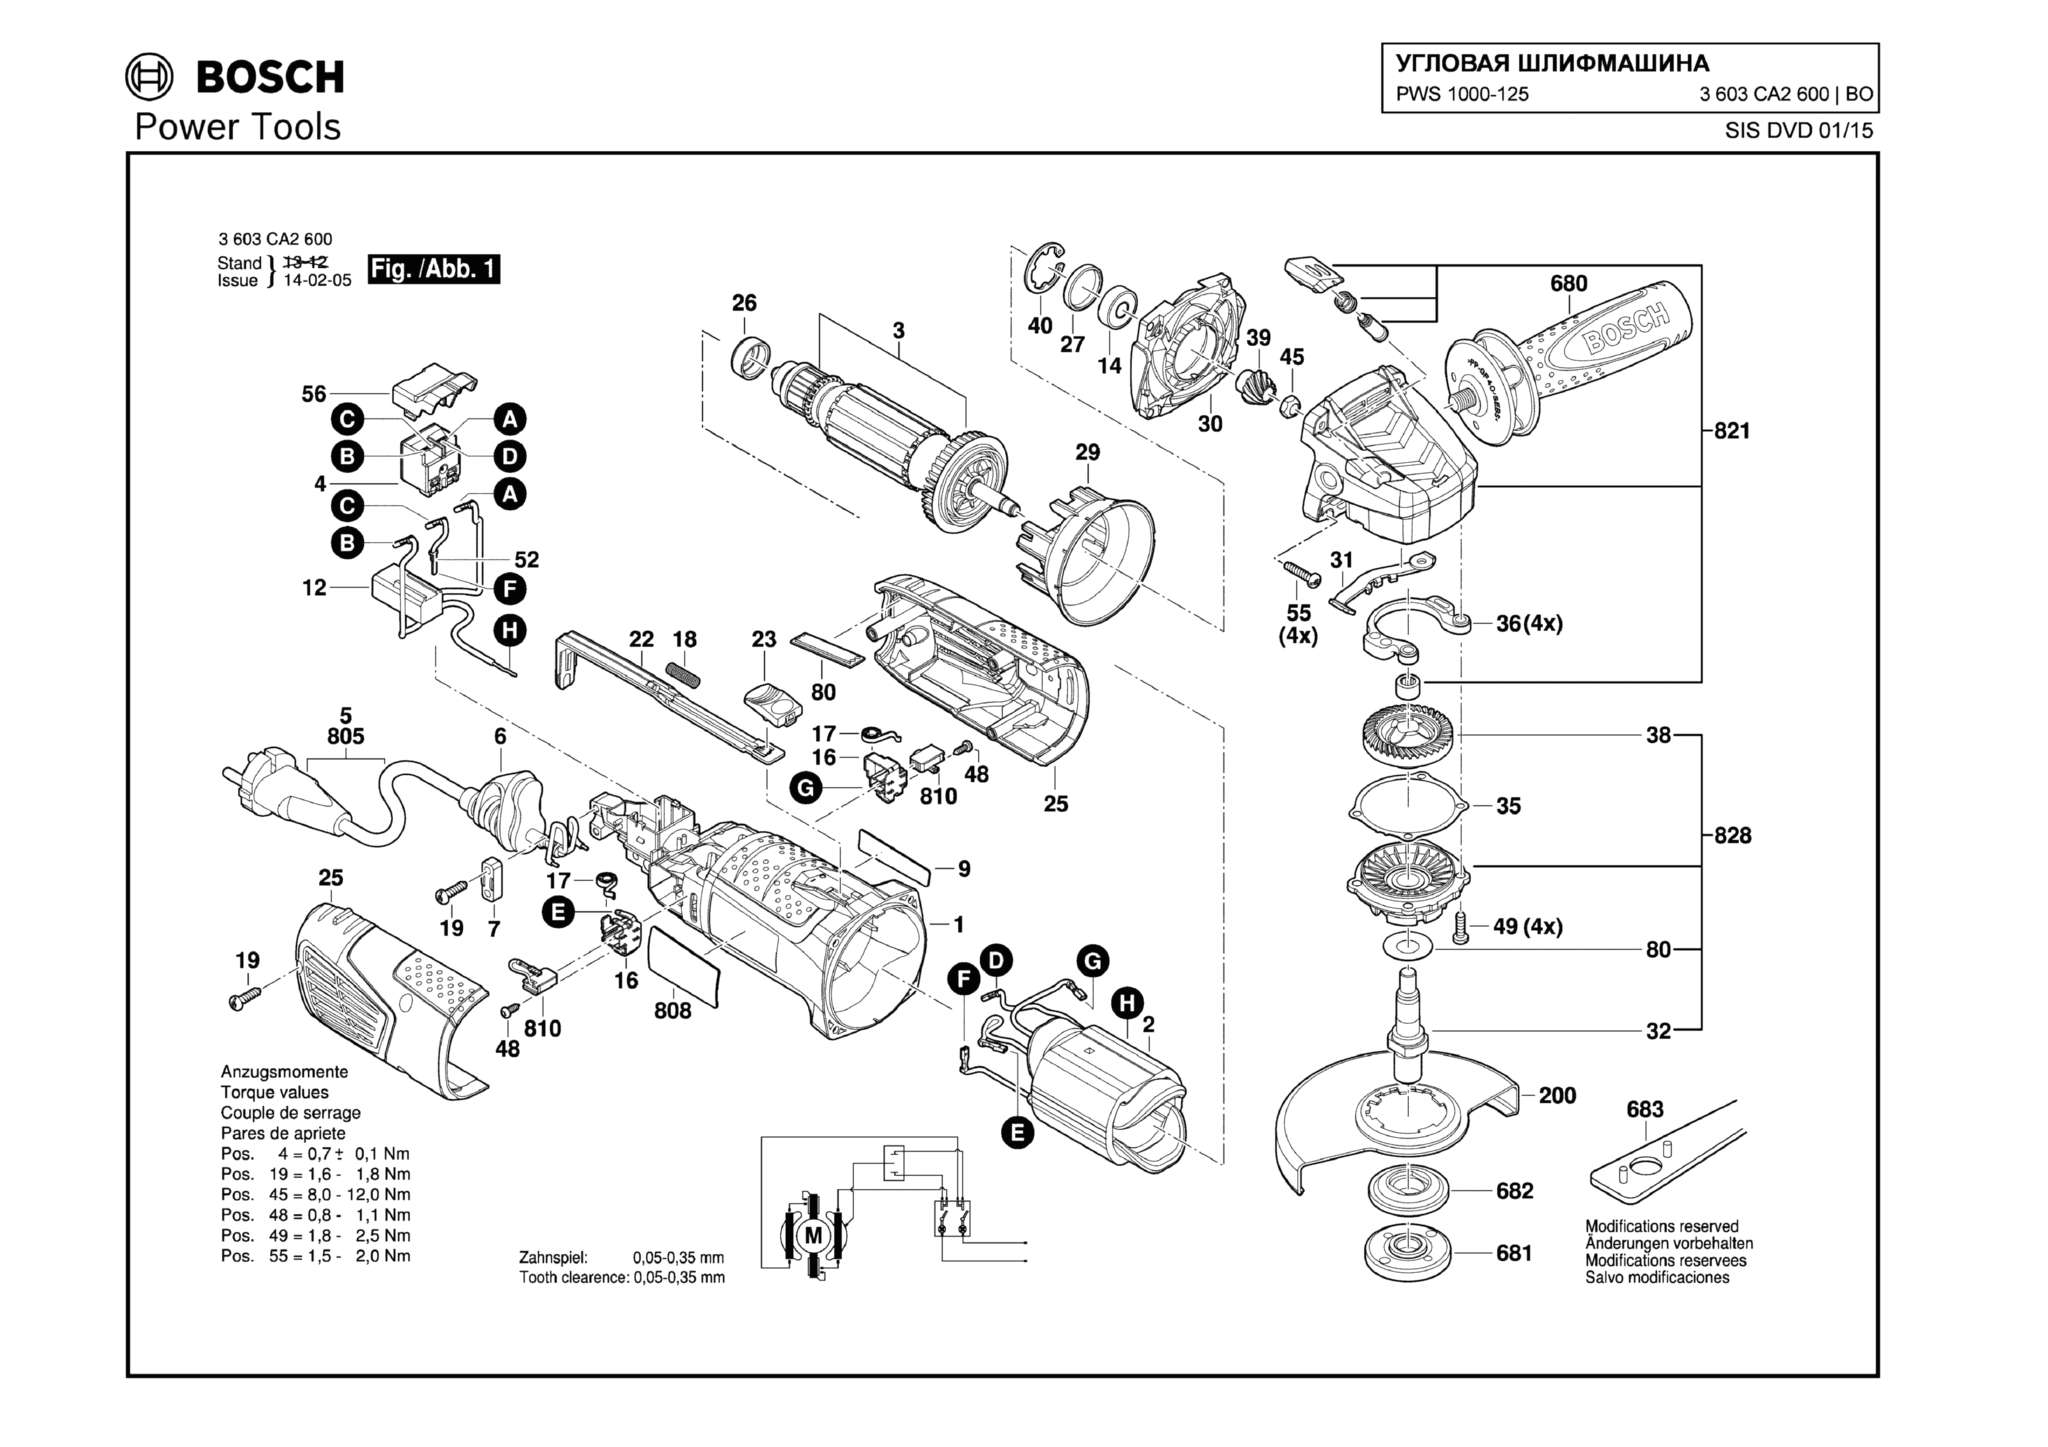 Запчасти, схема и деталировка Bosch PWS 1000-125 (ТИП 3603CA2600)